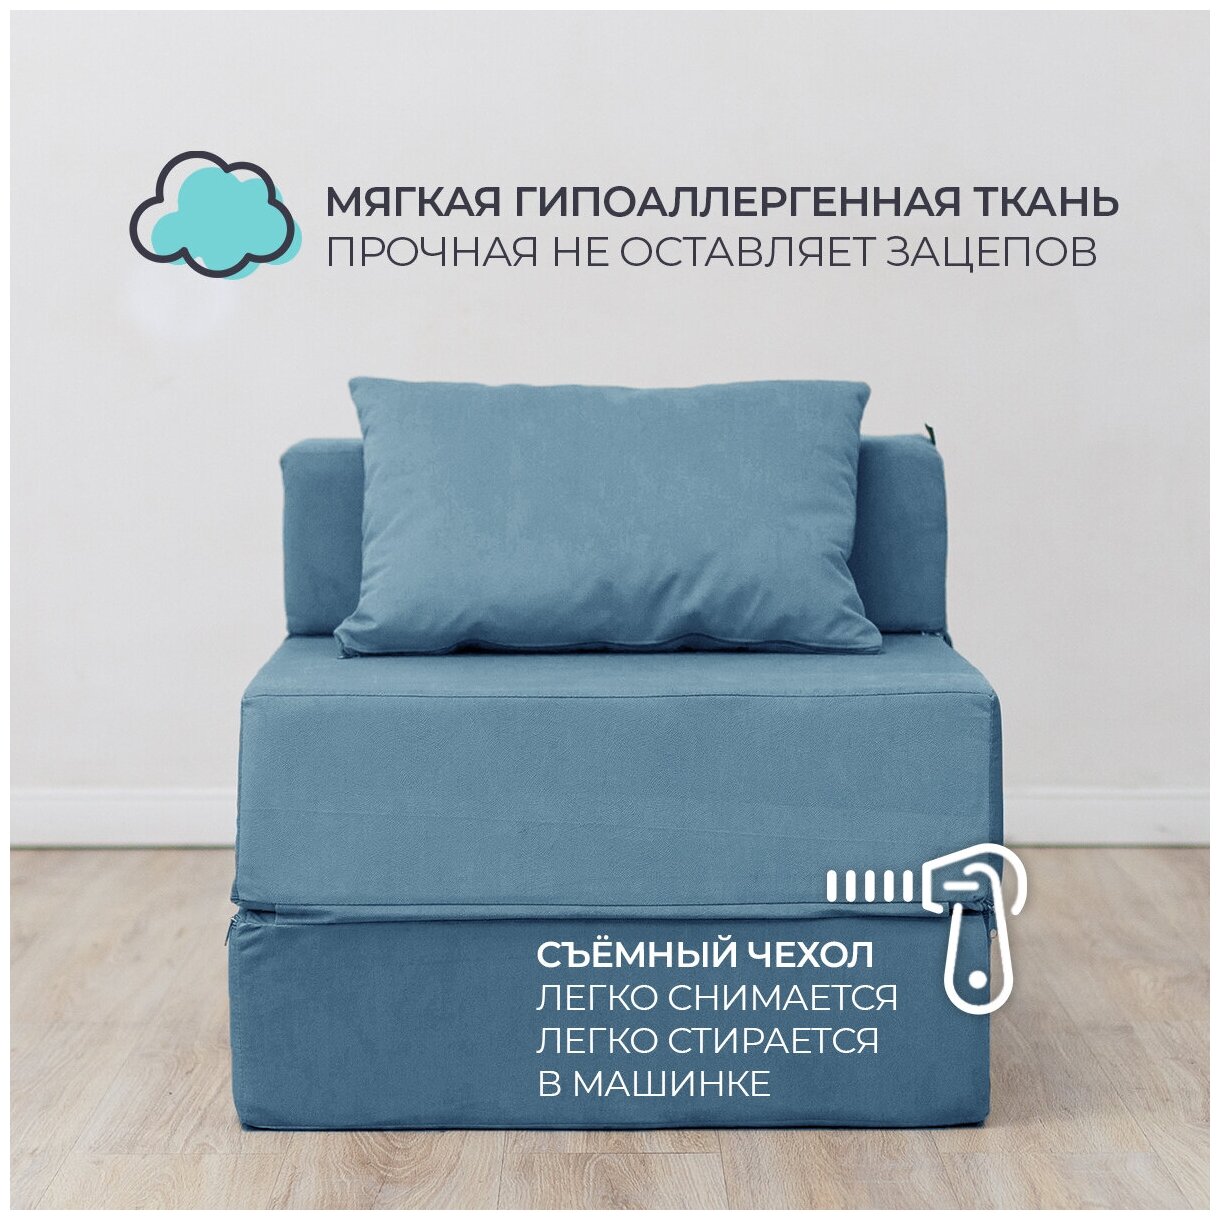 Бескаркасное кресло кровать Эссен, 60х69х78 см, раскладной мини диван трансформер синий